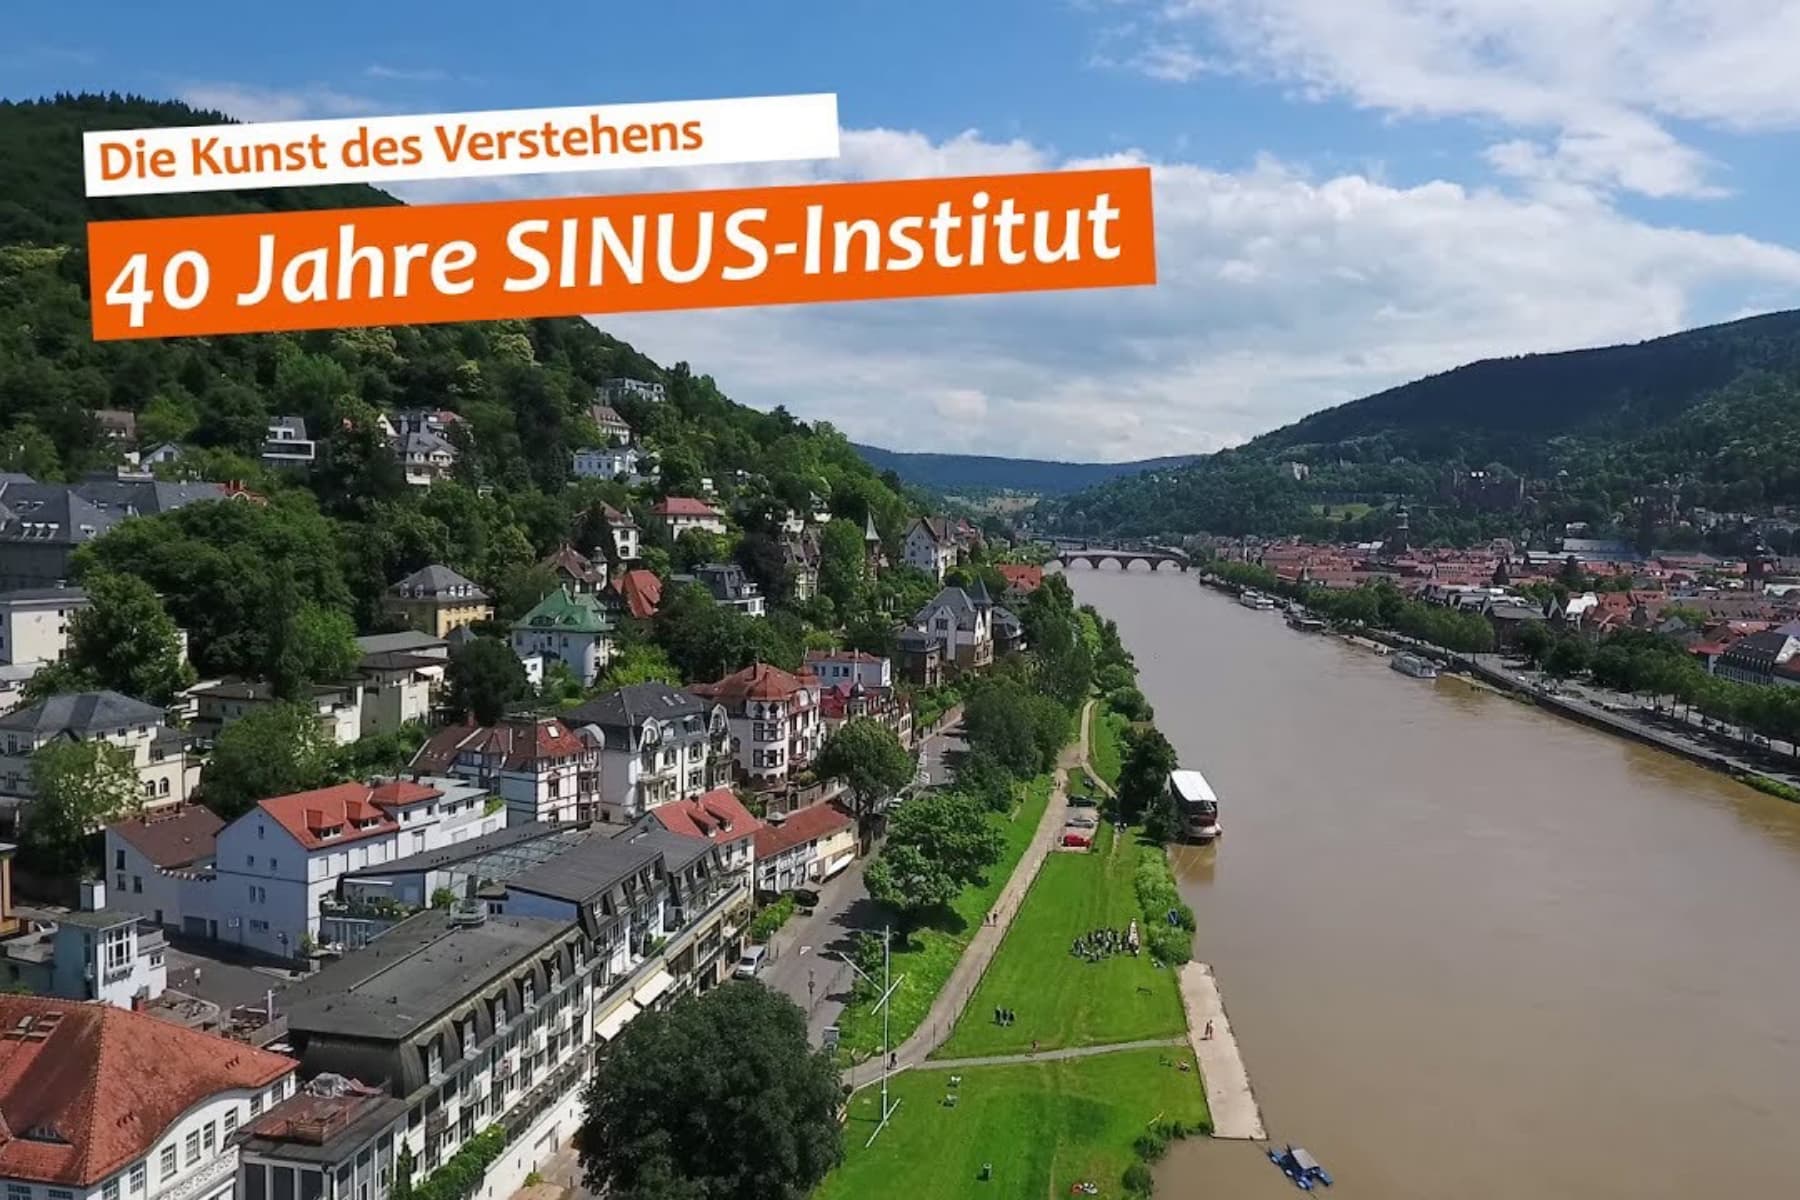 40 Jahre SINUS-Institut